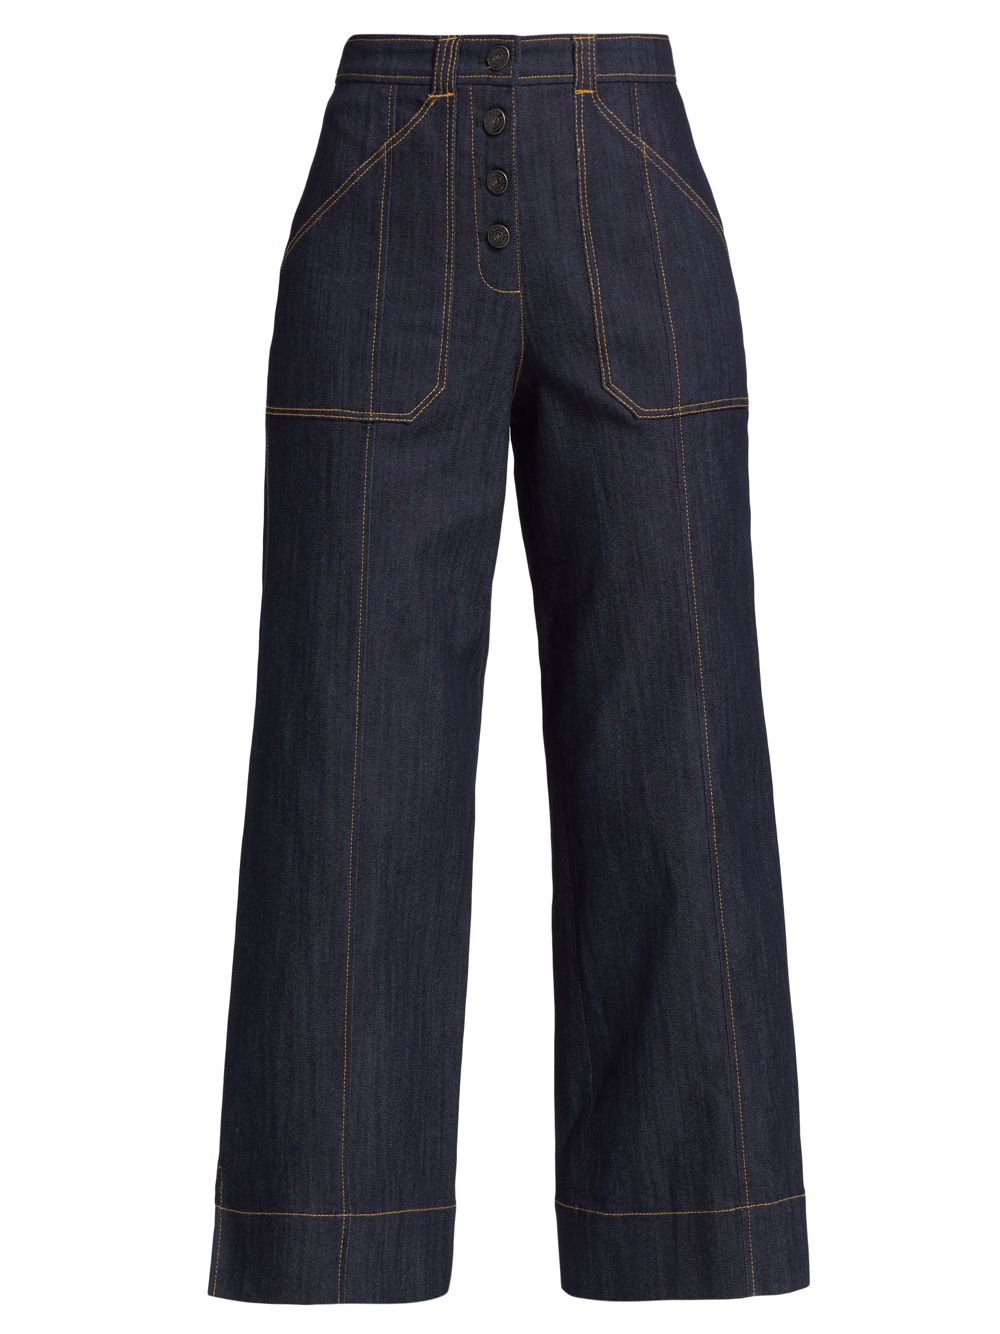 Широкие джинсы Benji со средней посадкой Cinq à Sept, индиго джинсы francine с высокой посадкой цвета индиго cinq à sept цвет blue